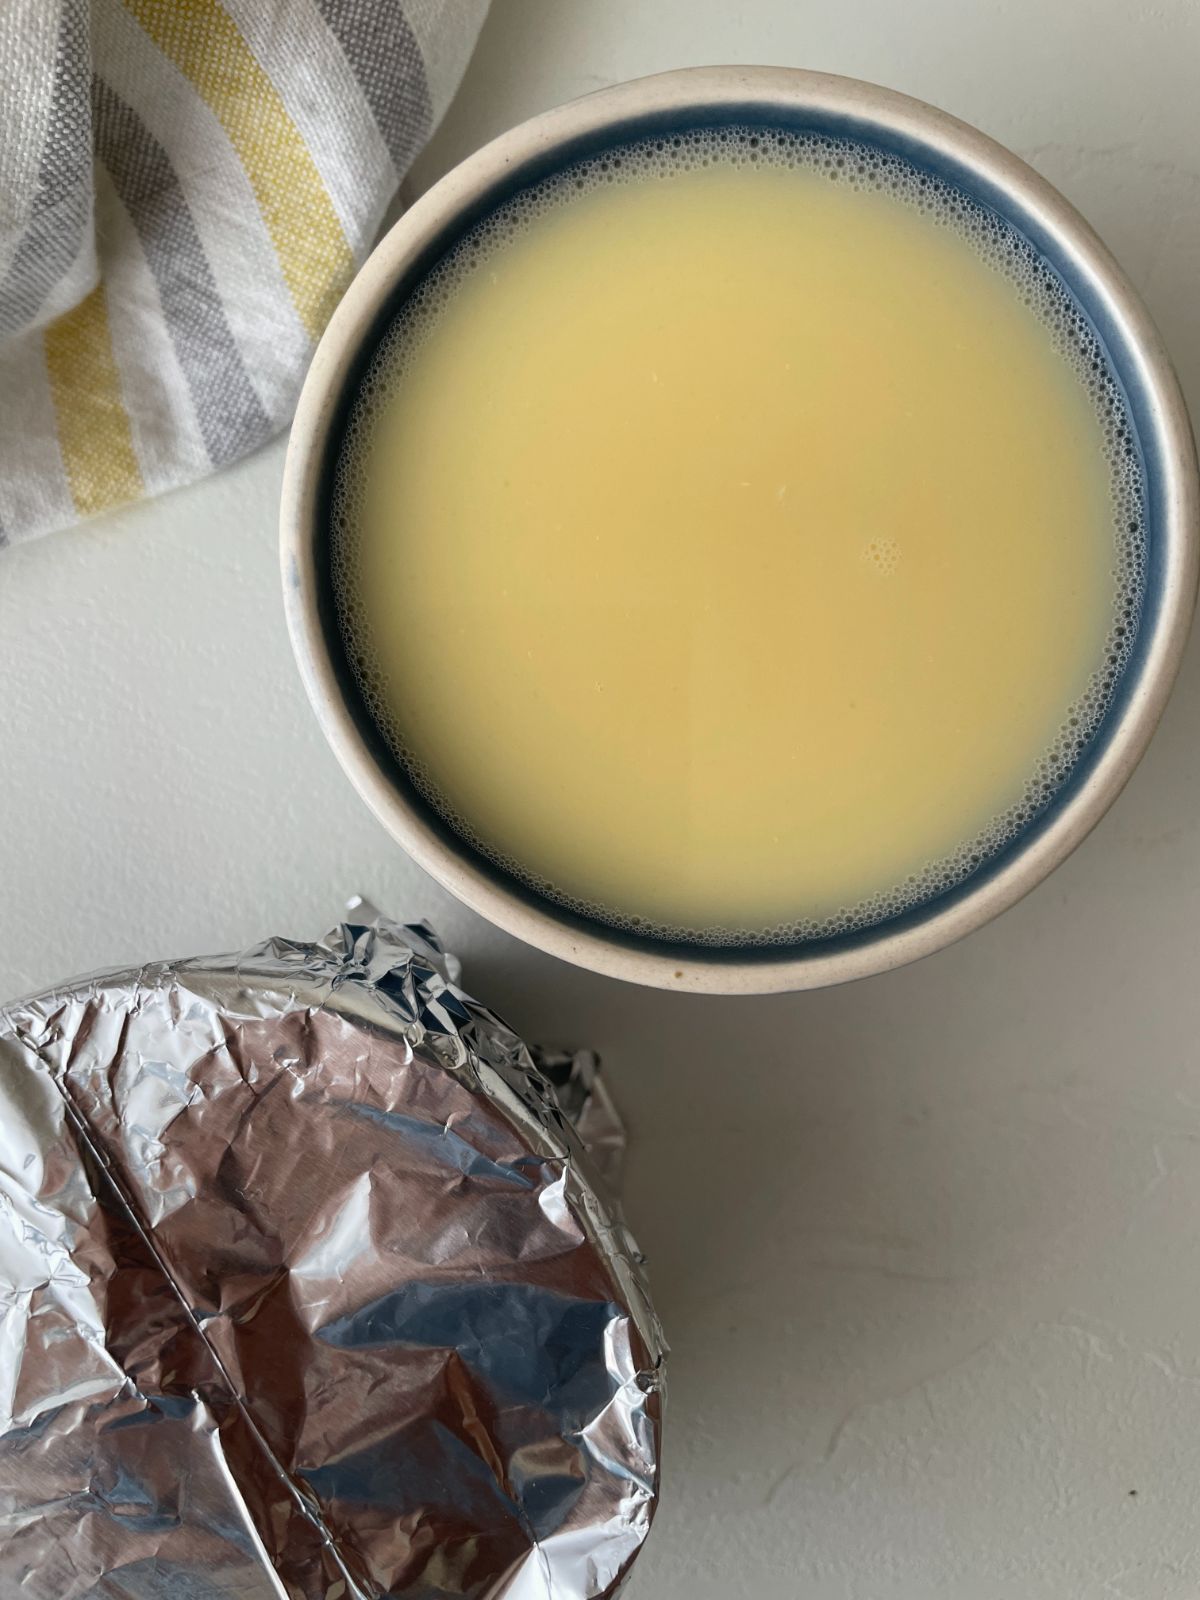 Egg mixture in ramekin covered in foil